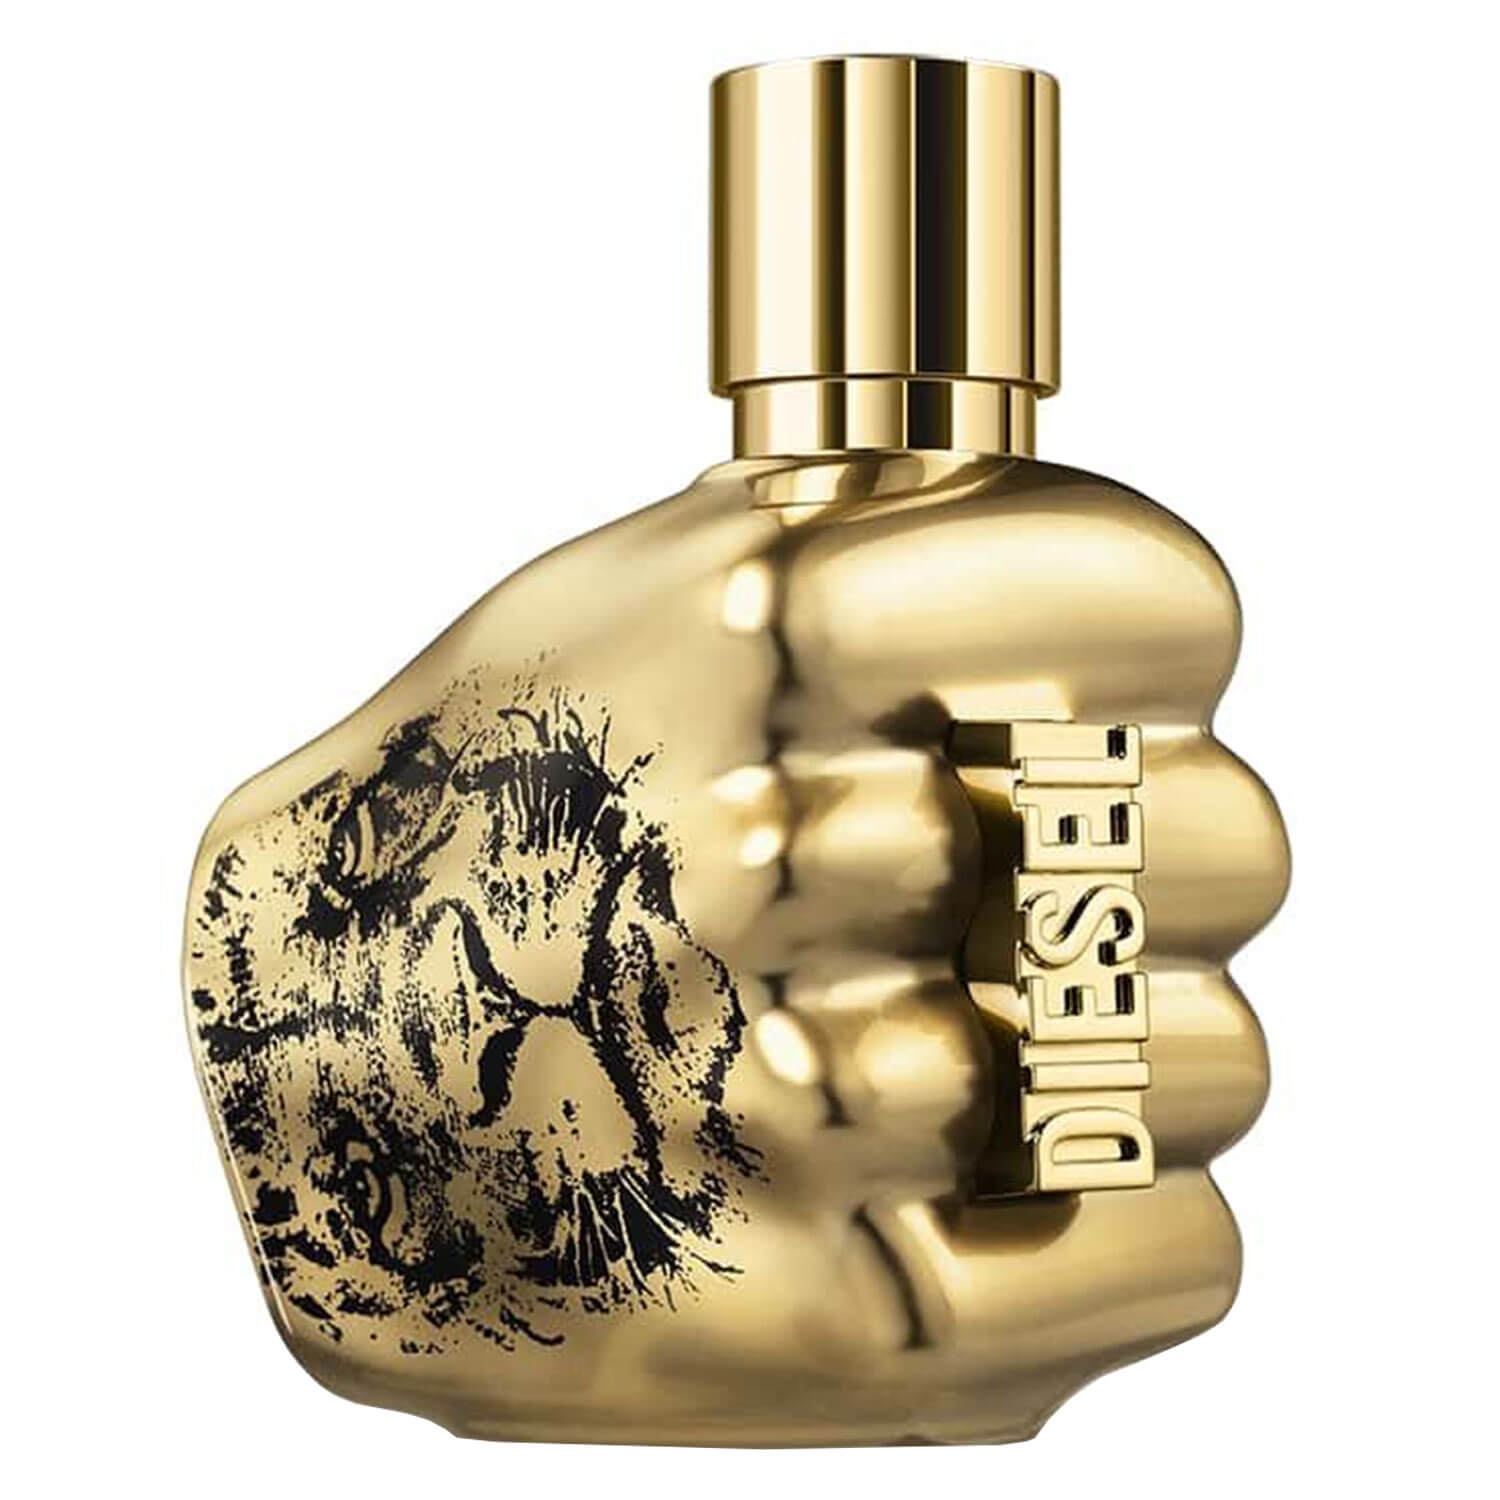 Produktbild von Only the Brave - Spirit Of The Brave Intense Eau de Parfum